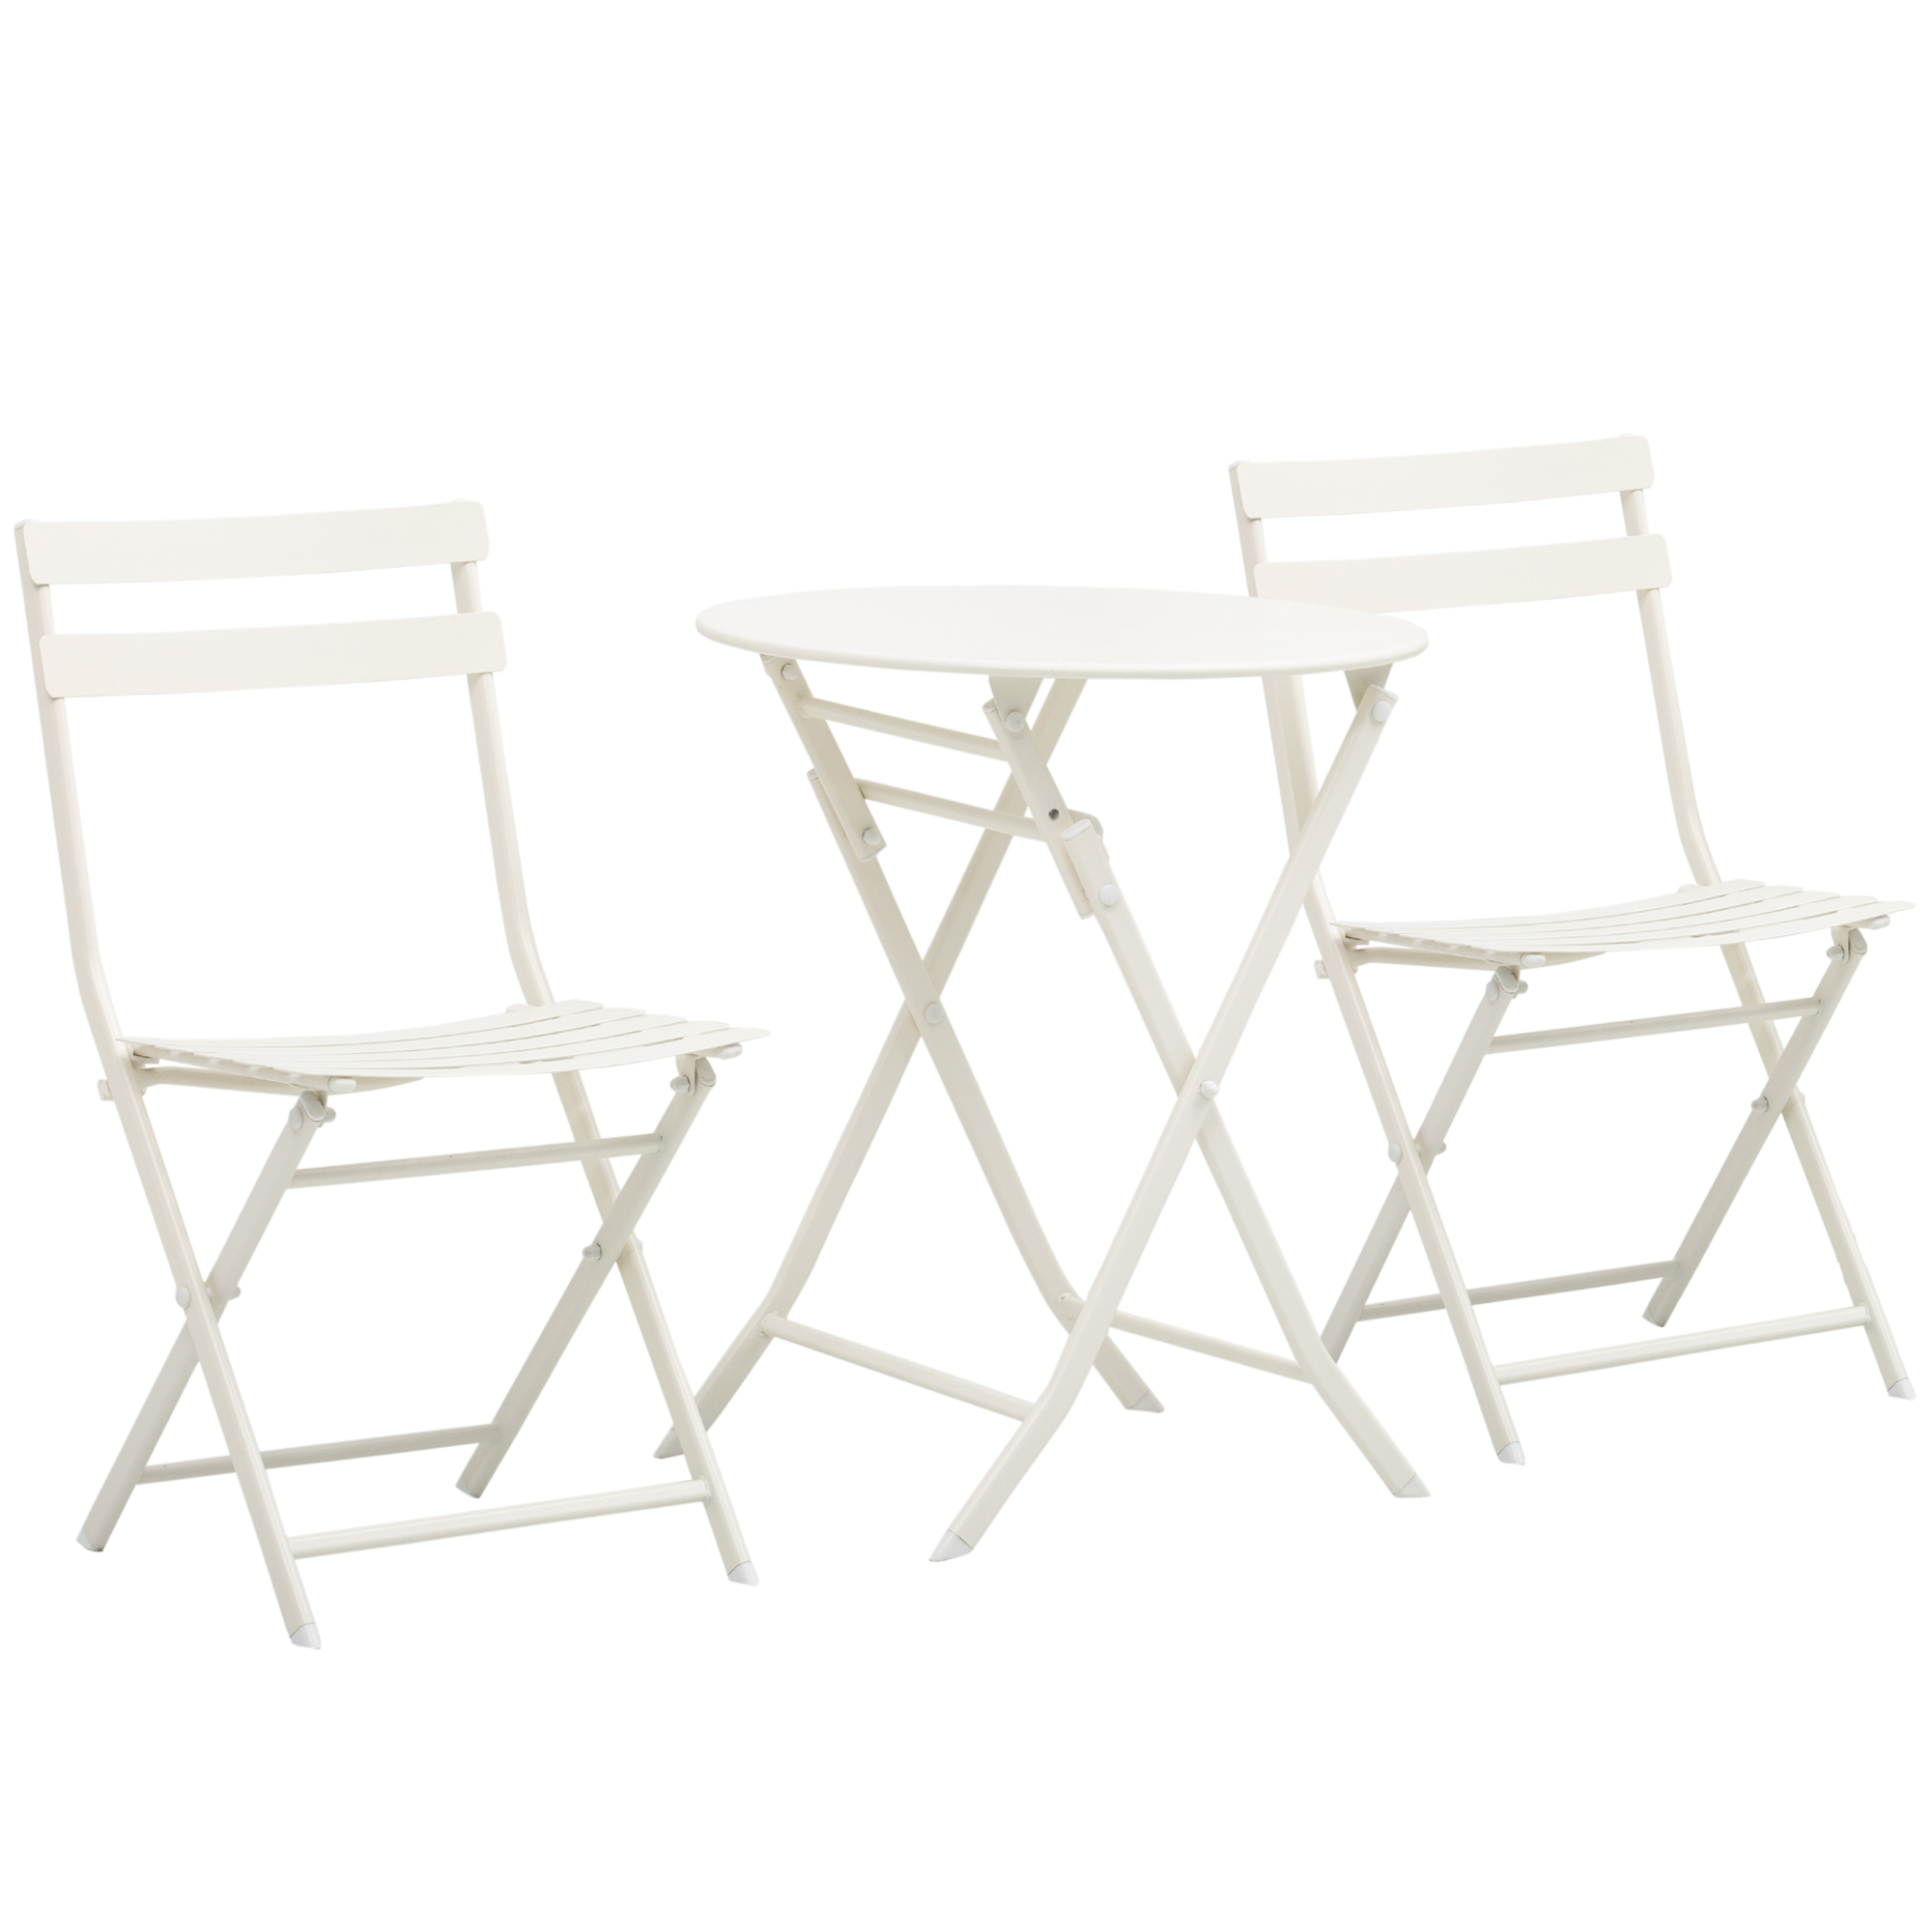 Τραπεζάκι σαλονιού Outsunny με Πτυσσόμενες Καρέκλες από Λευκό Ατσάλι για Μπαλκόνι